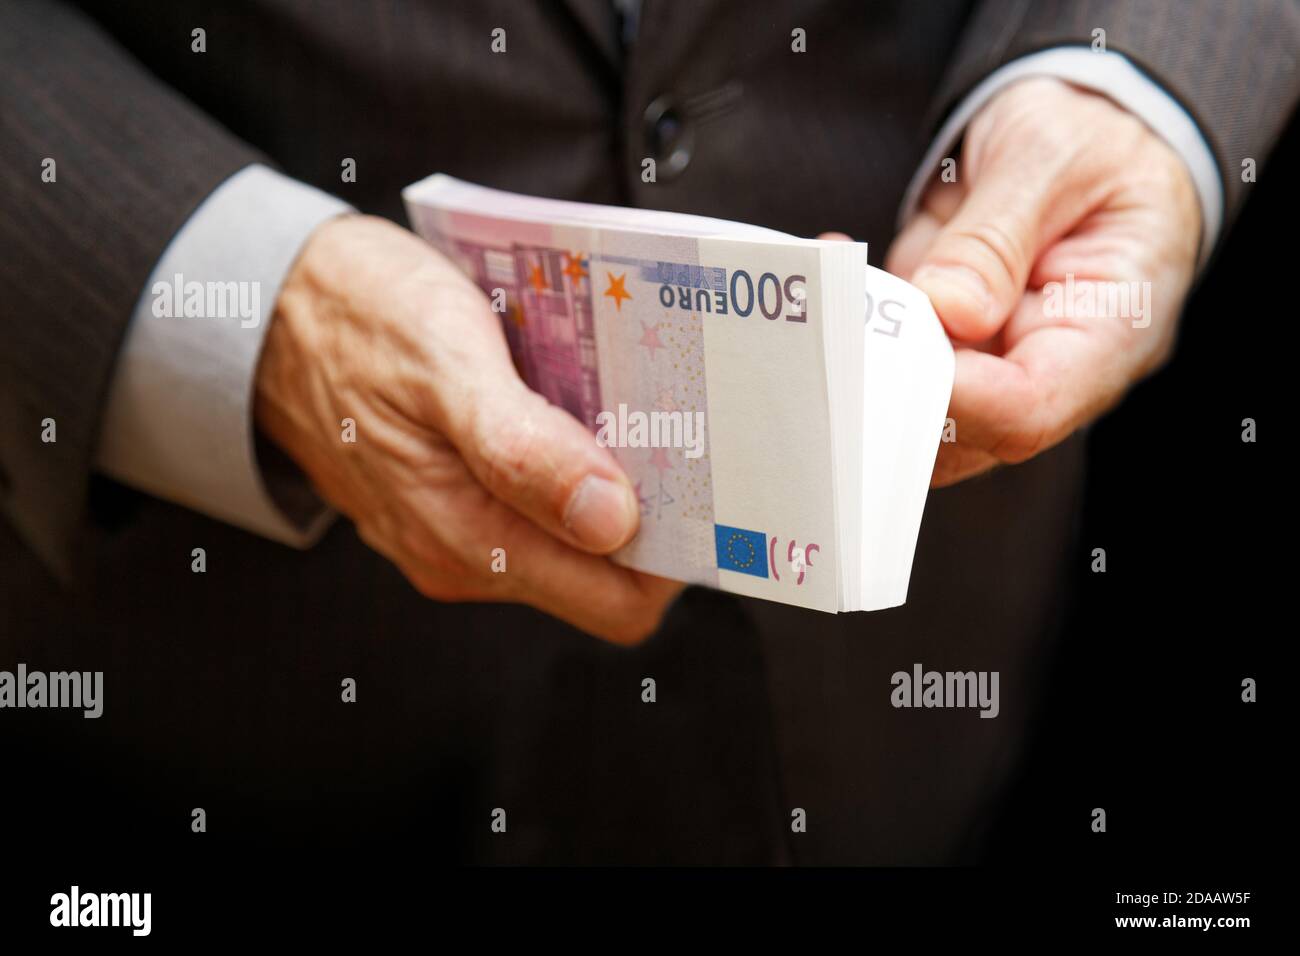 Ein Mann zählt das Geld in einem Geldbündel von 500 Euro. Geringer Fokus. Geschäfts- oder Finanzkonzept. Stockfoto